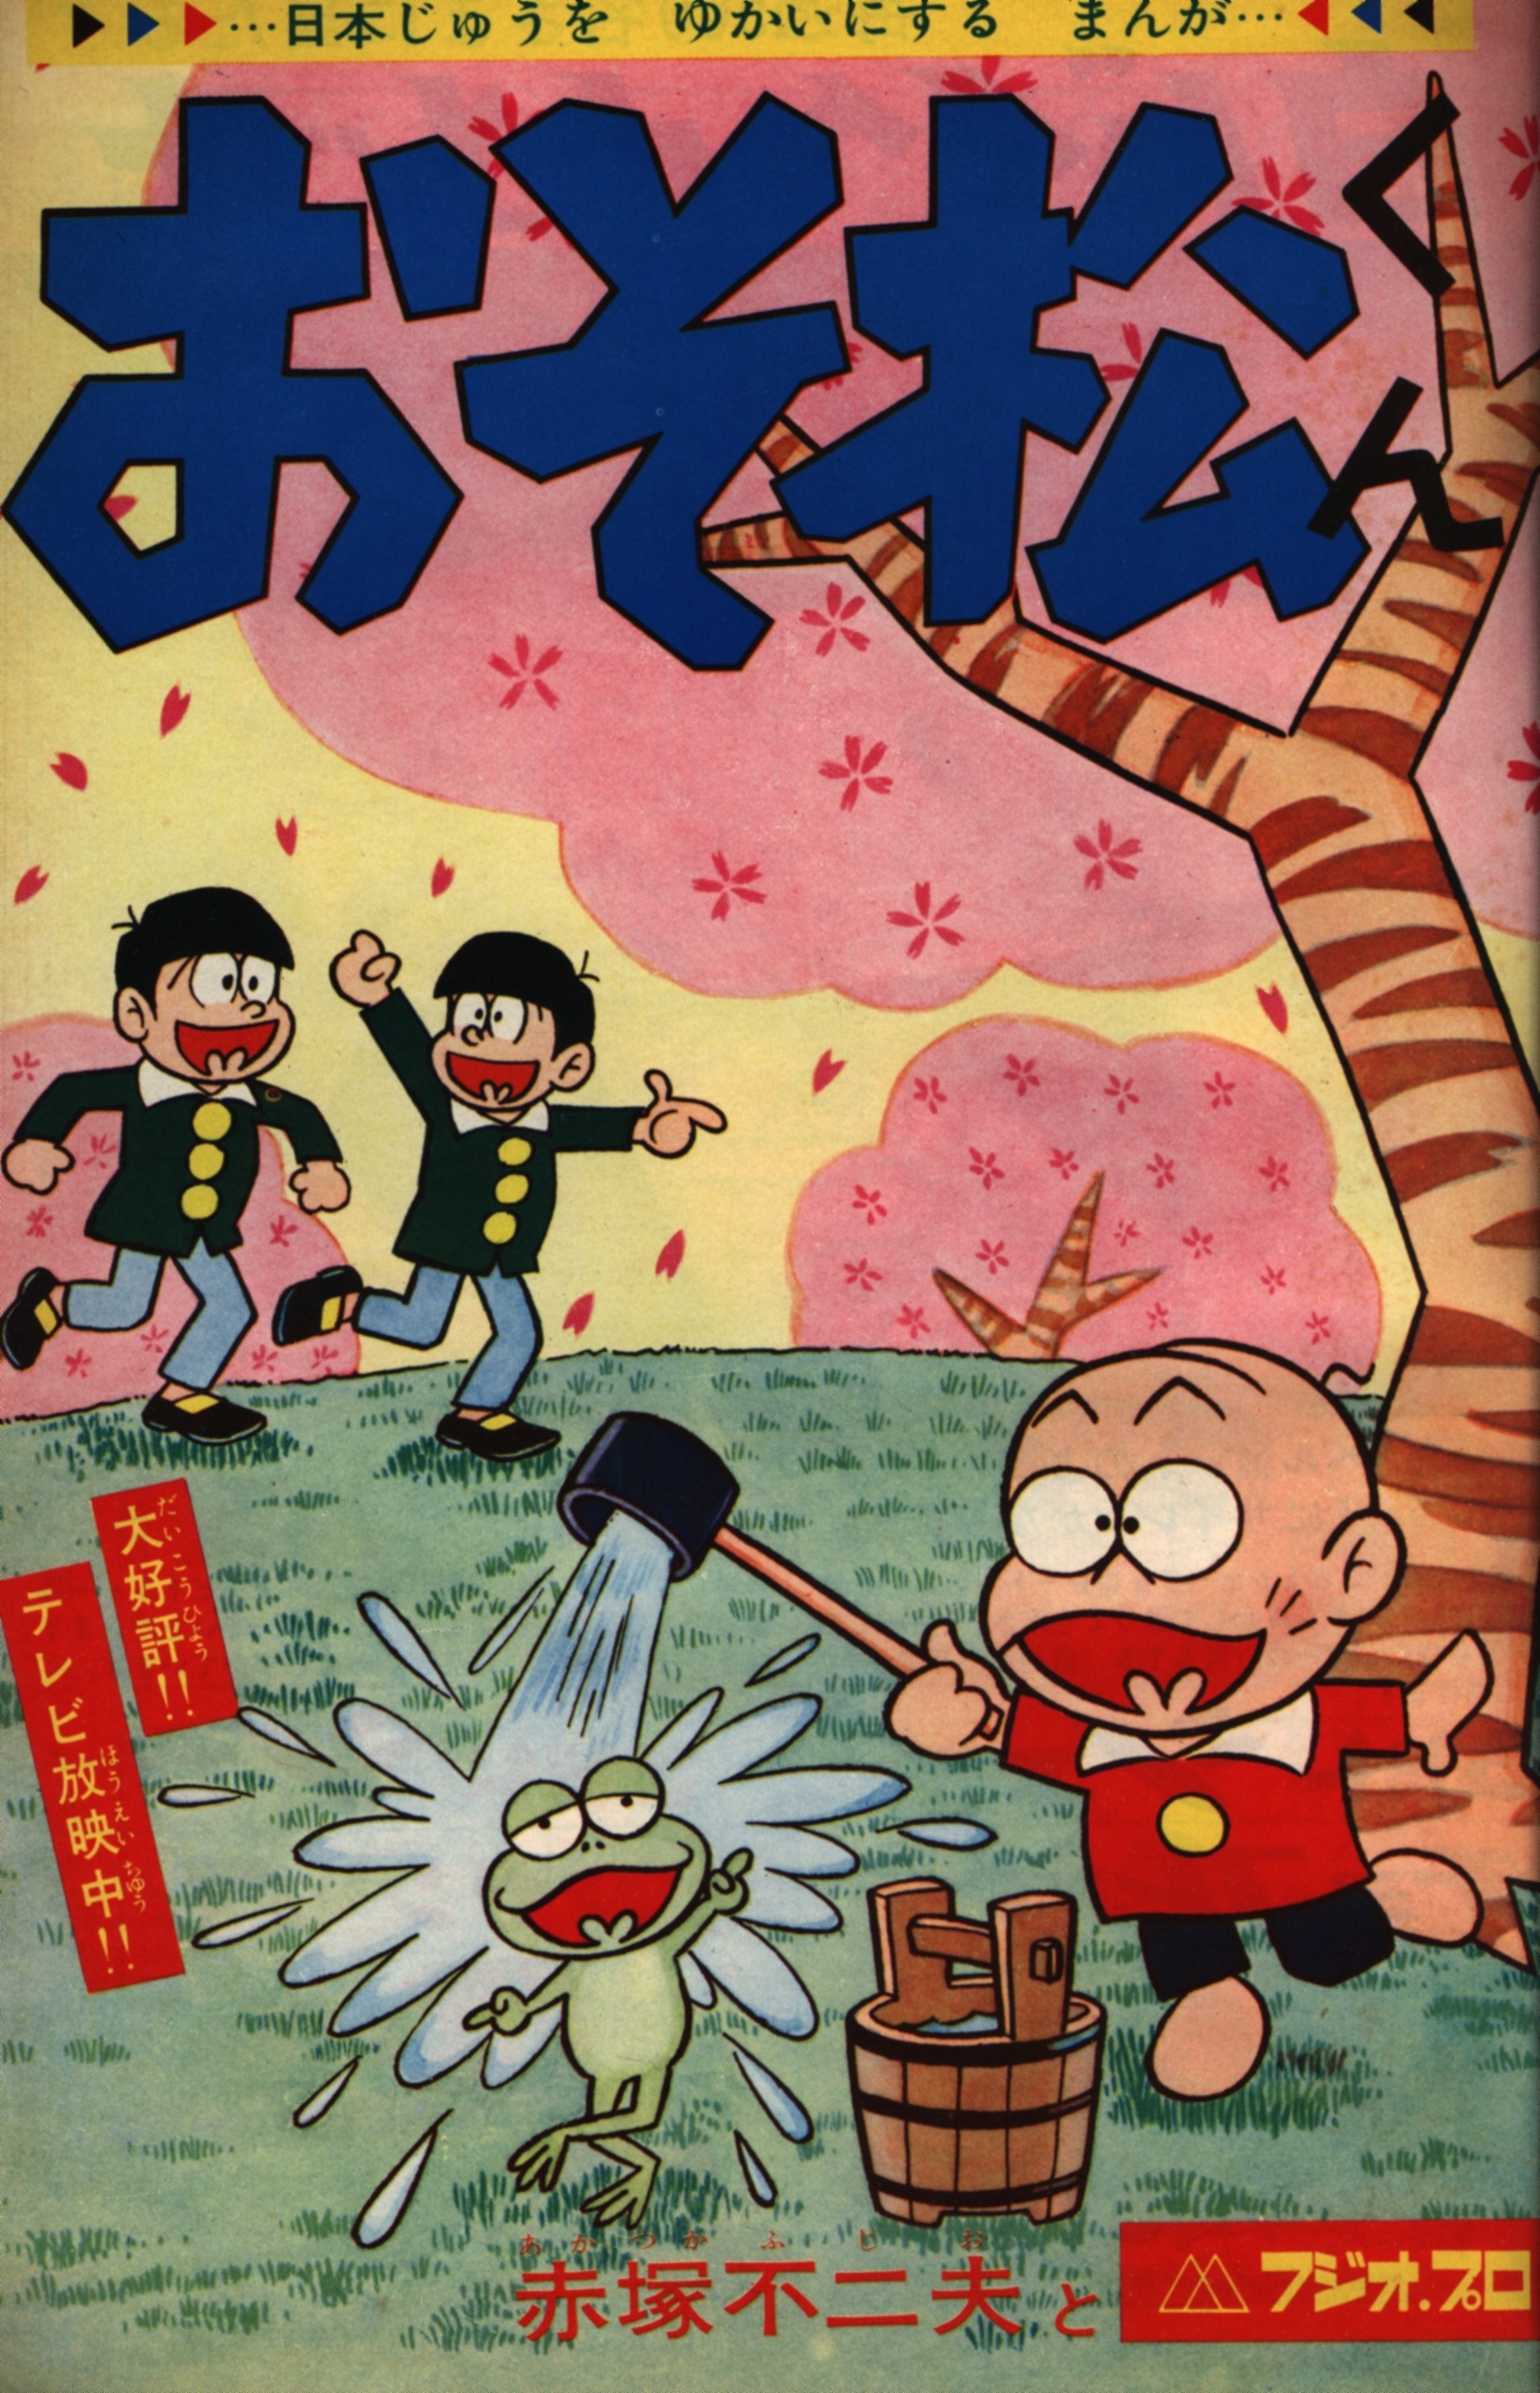 小学馆 1966年(昭和41年)の漫画雑志 周刊少年サン